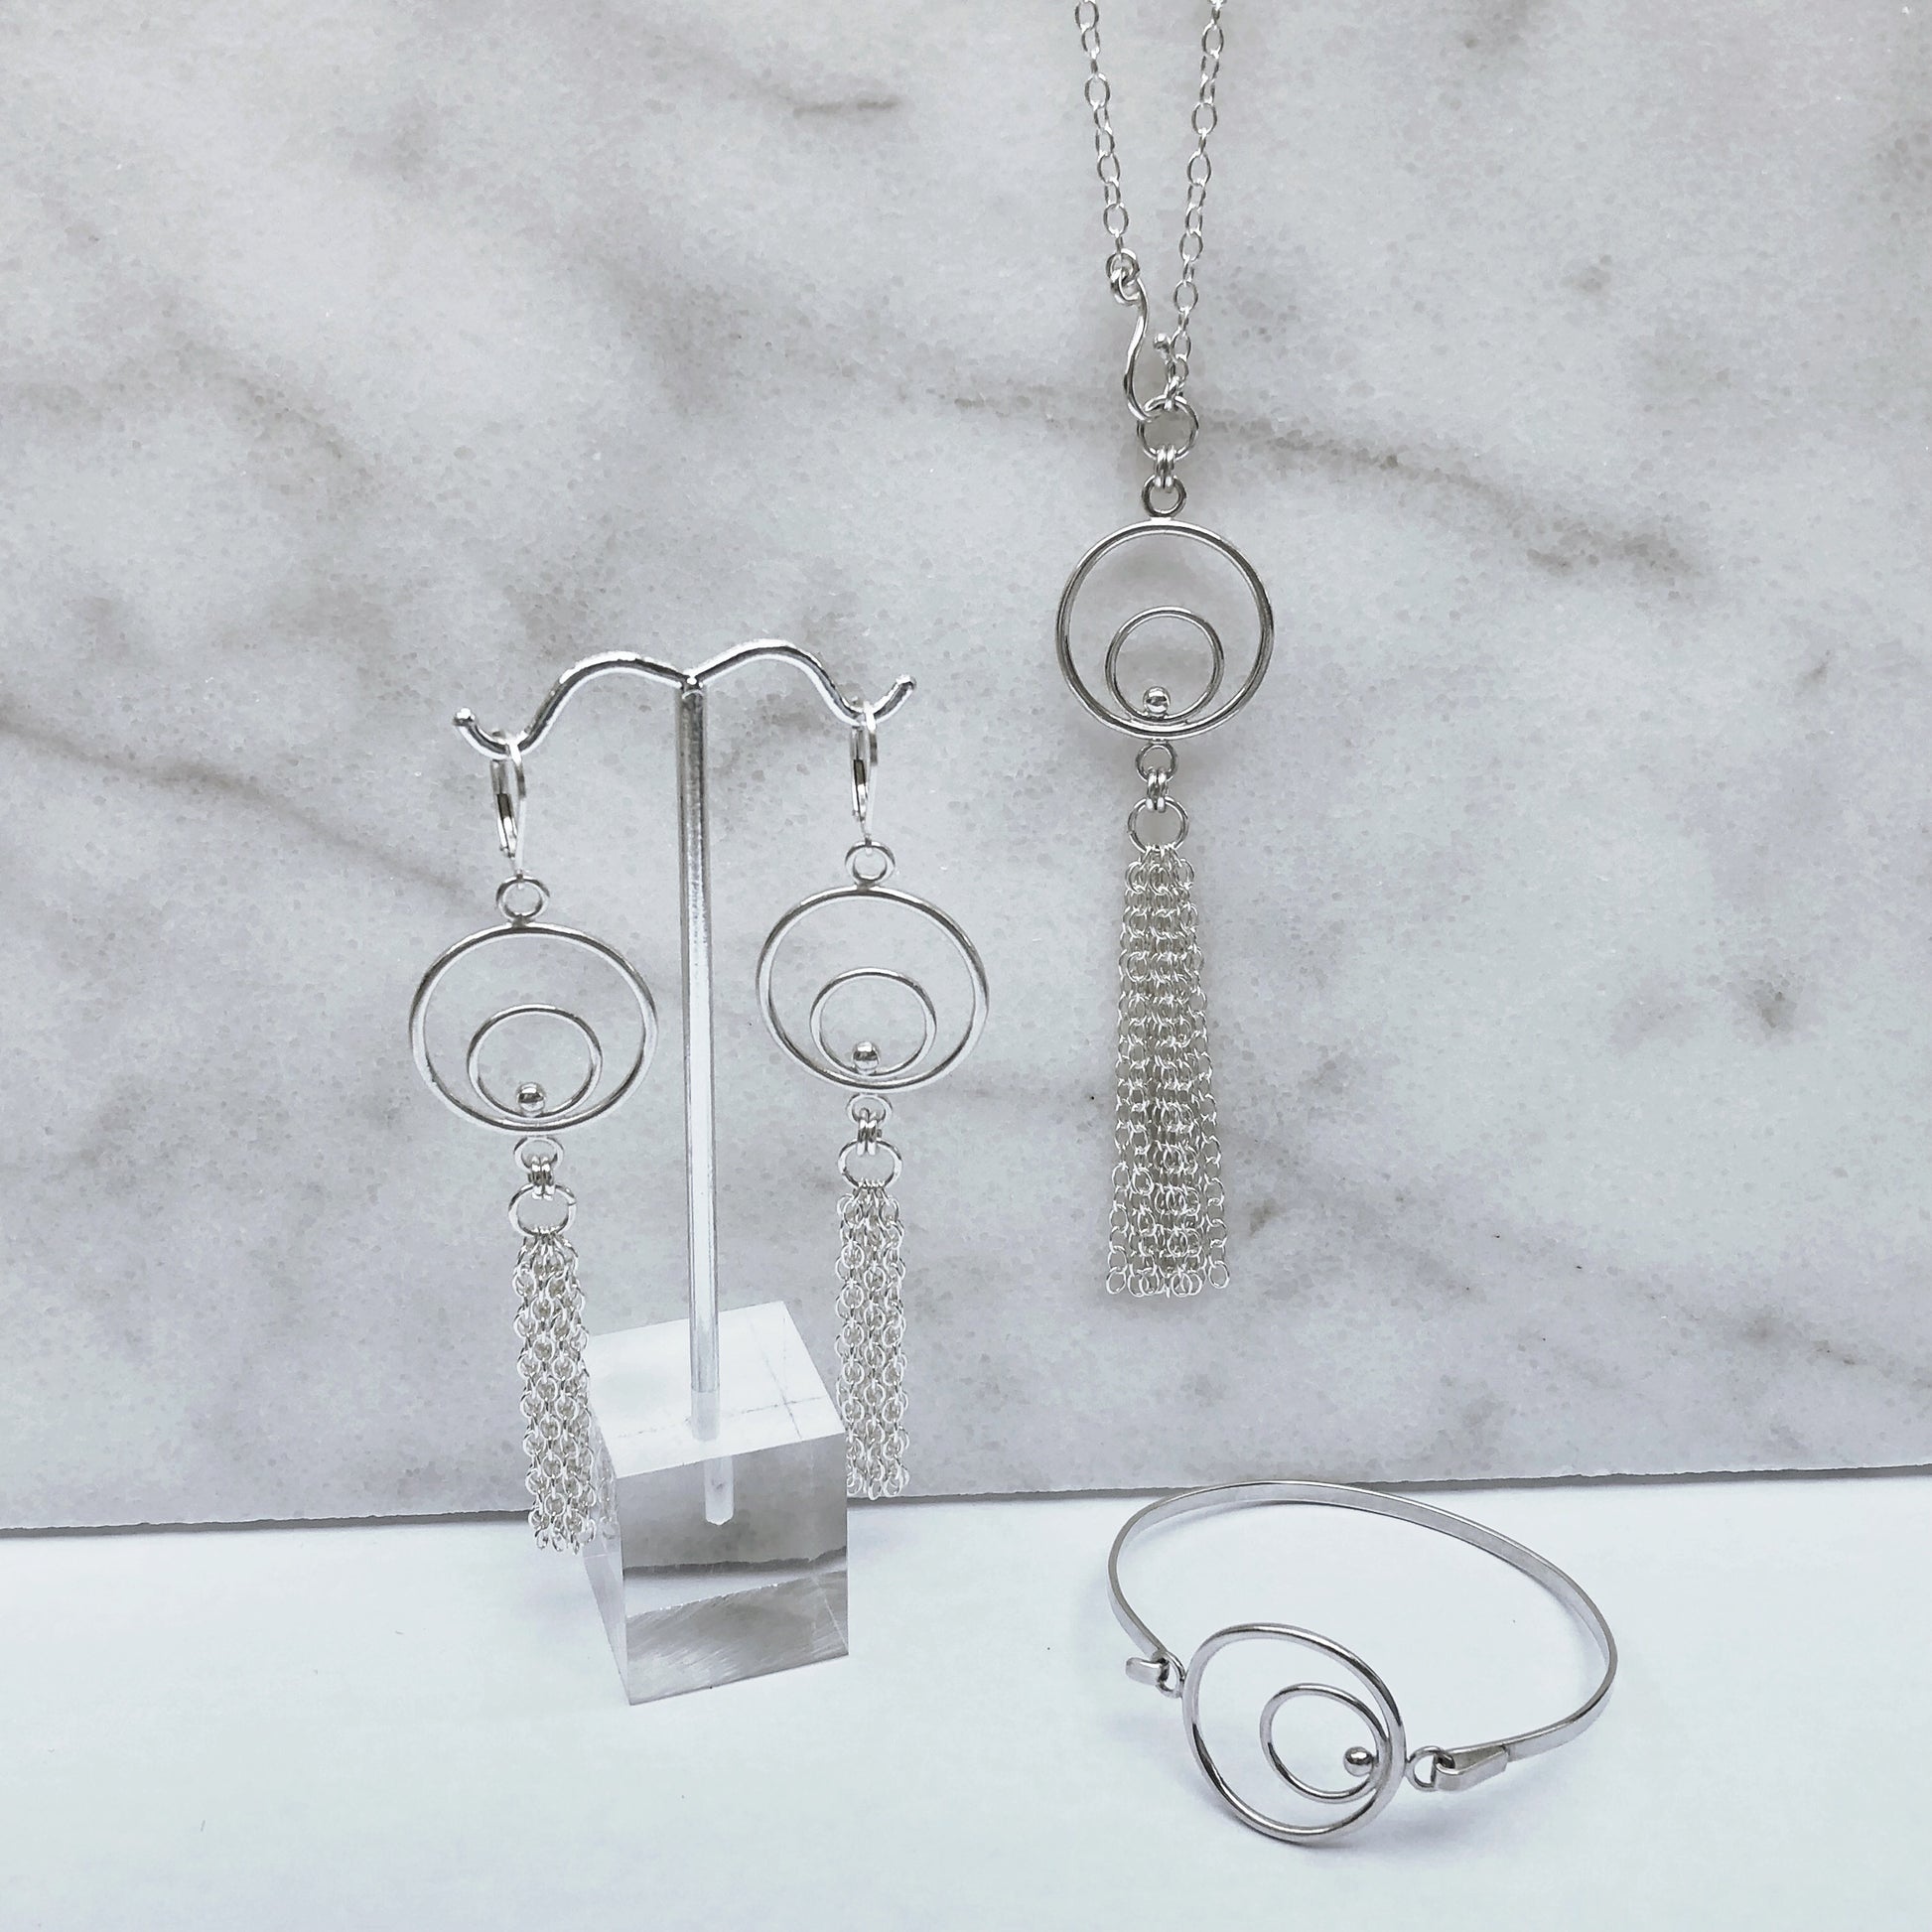 Orbital fringe earrings necklace and bracelet